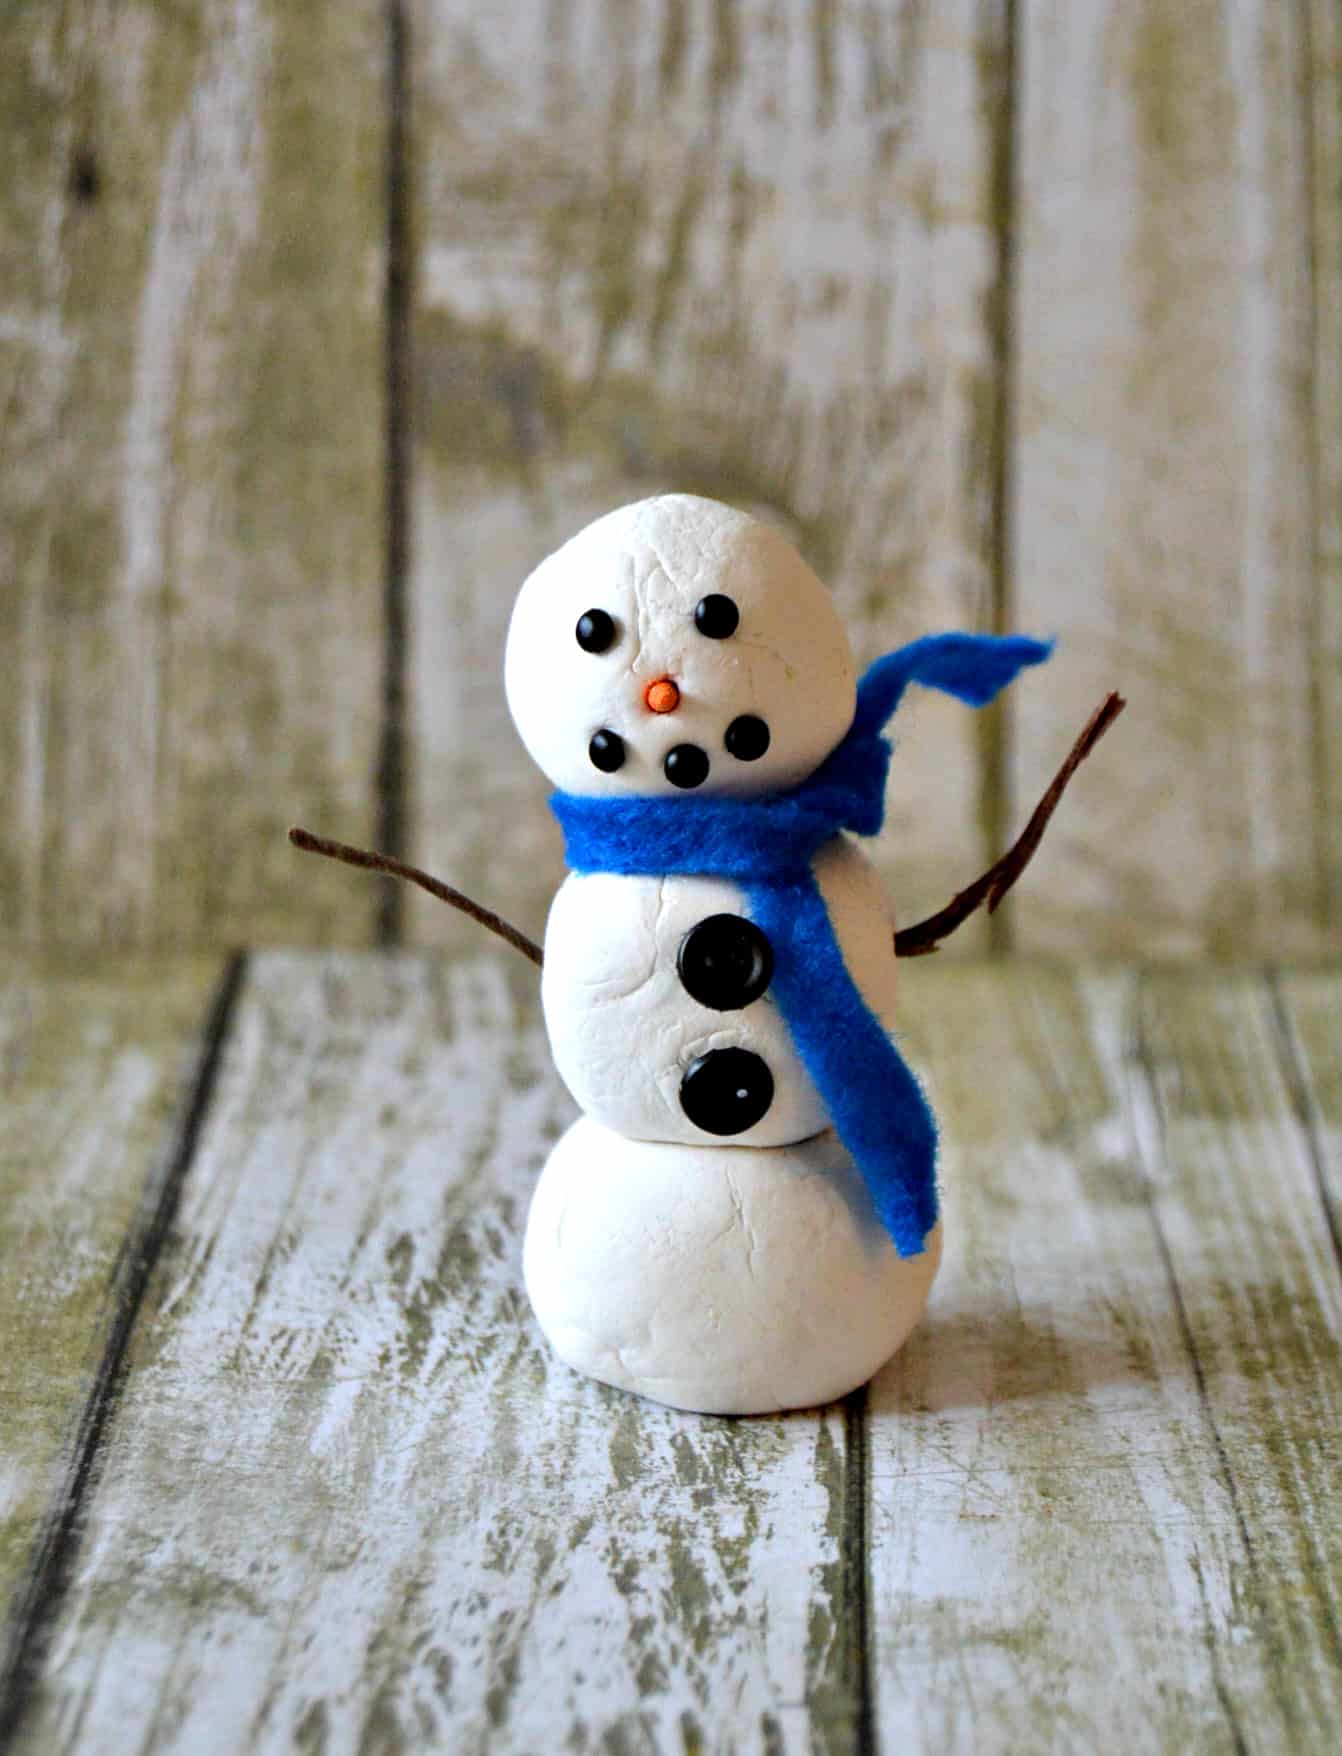 Clay snowman